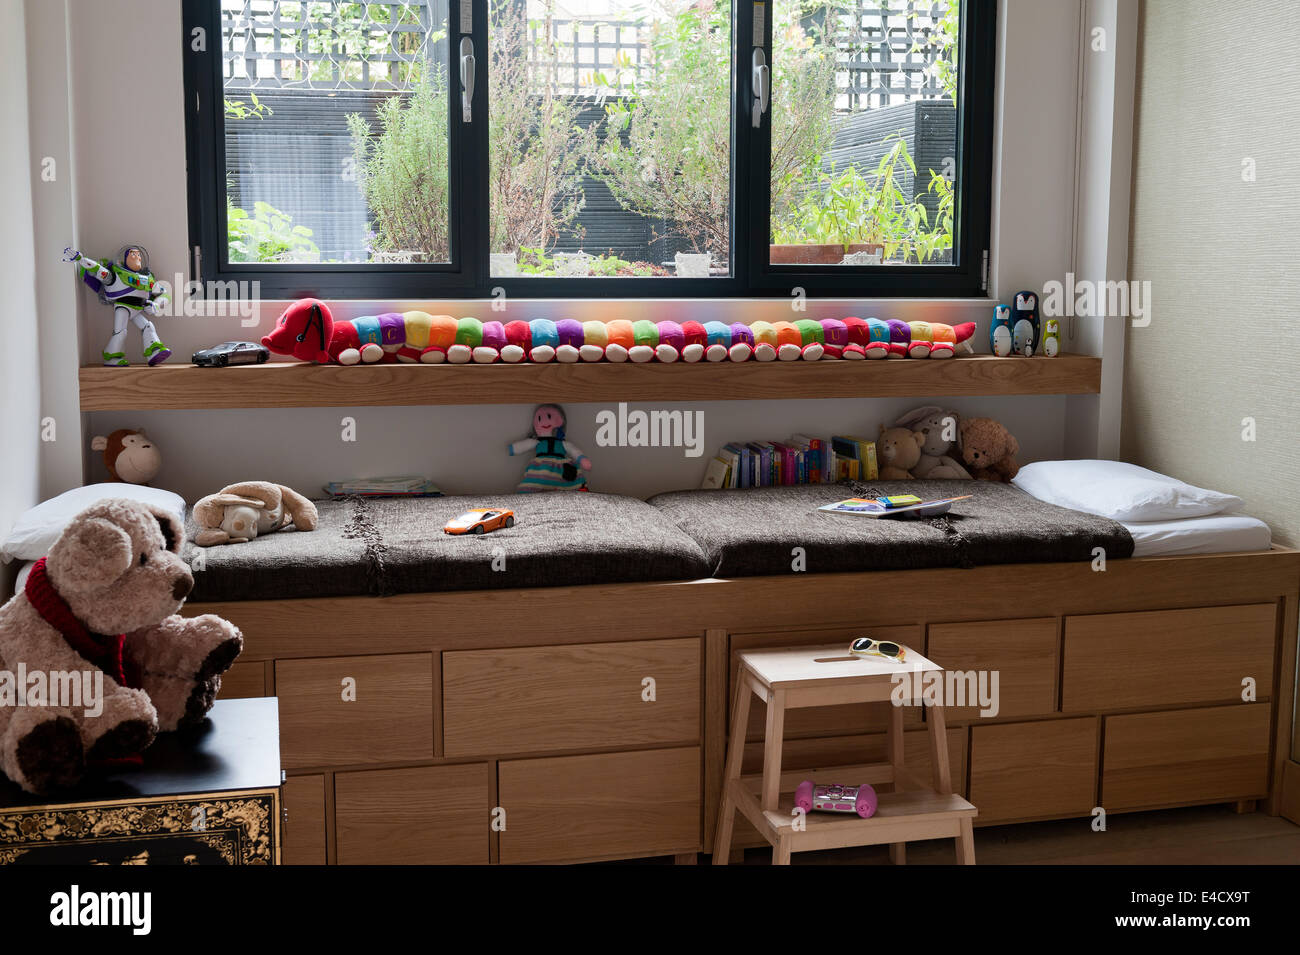 Hana chêne commode par Habitat en salle de jeux pour enfants Photo Stock -  Alamy